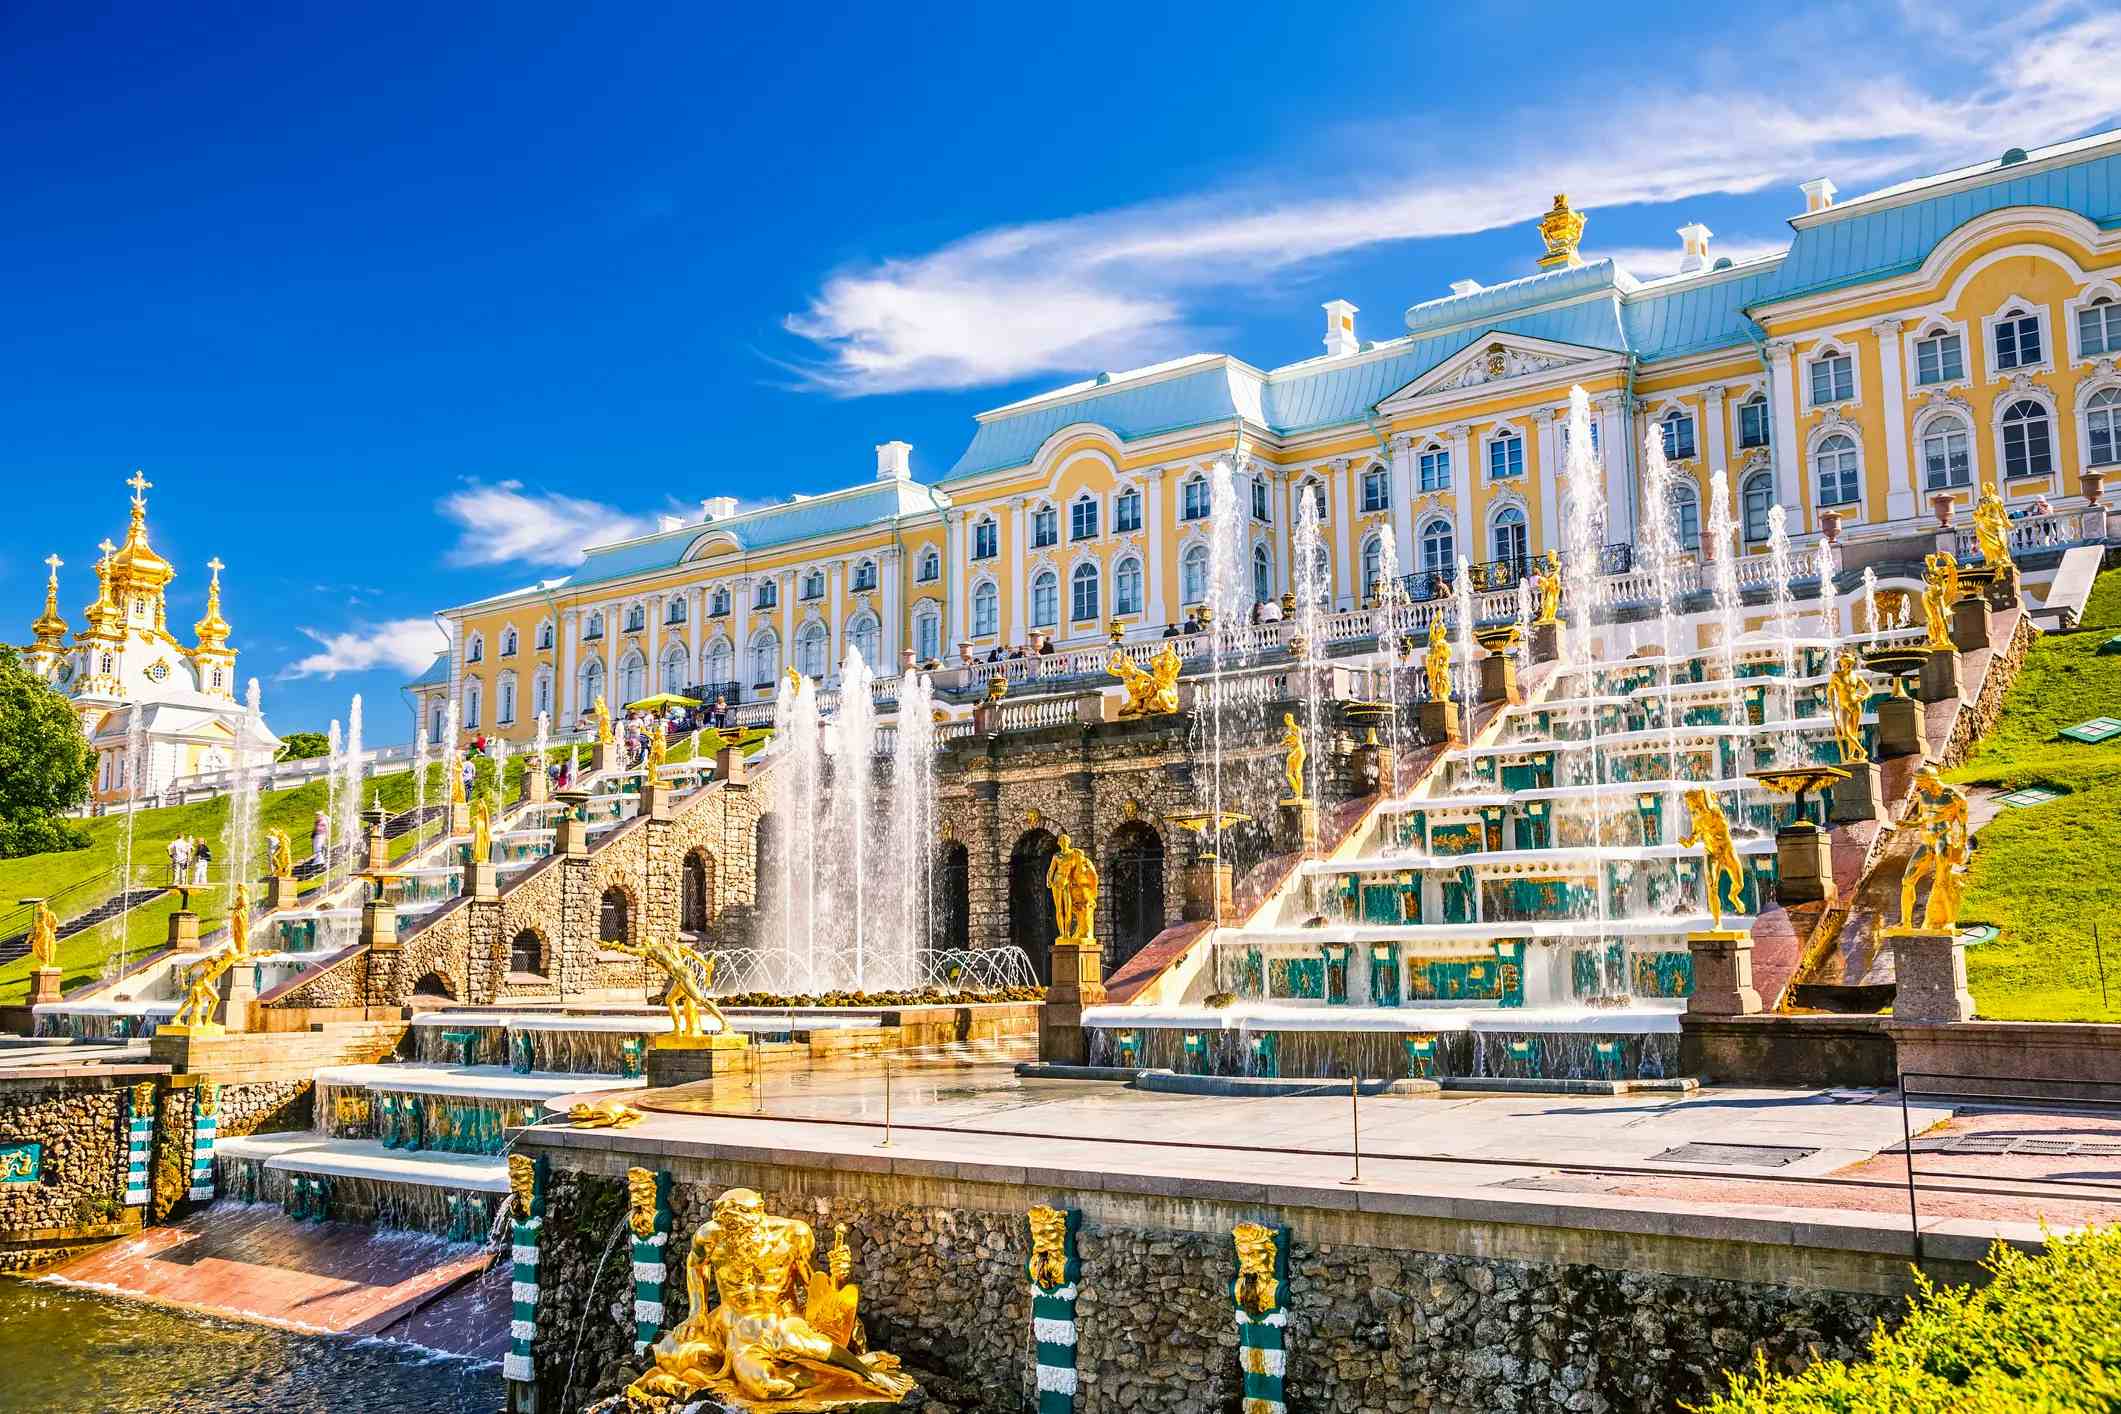 St Petersburg image